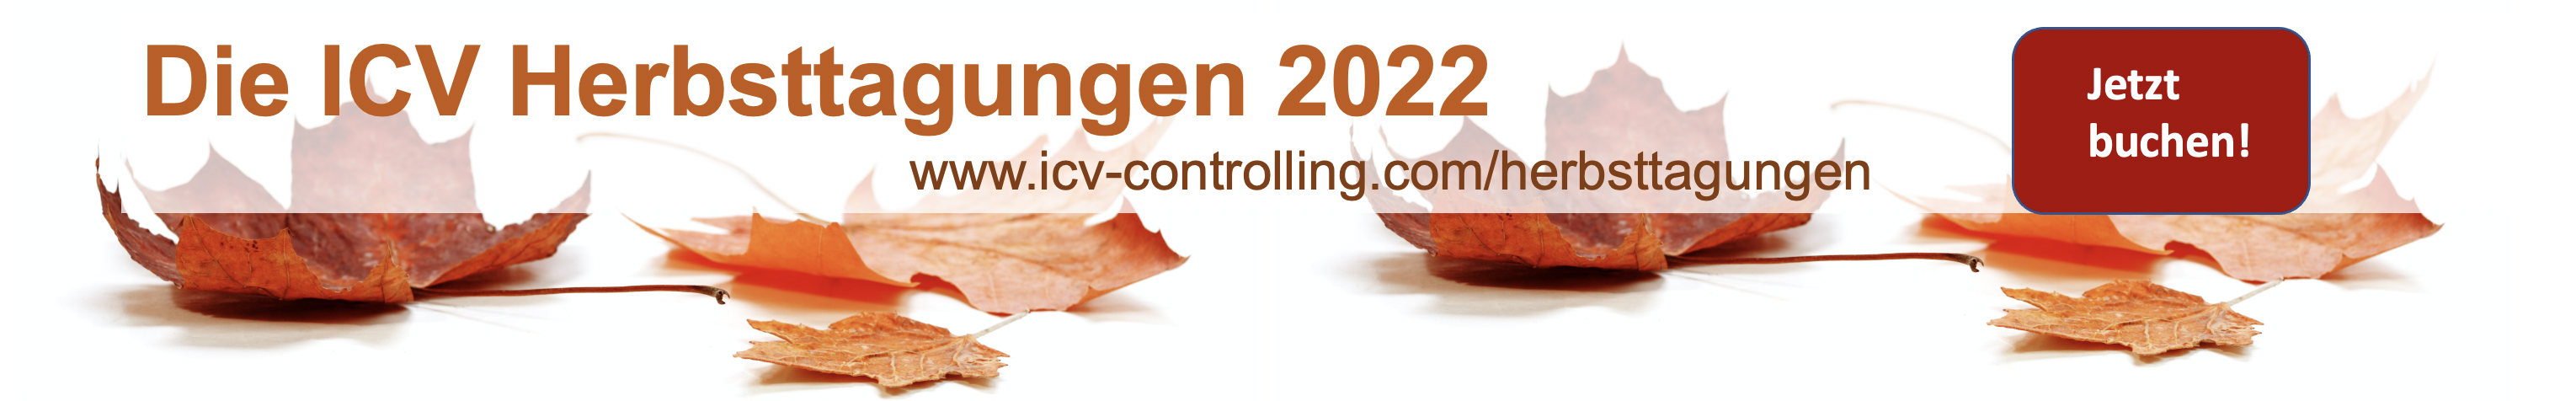 ICV Herbsttagungen 2022